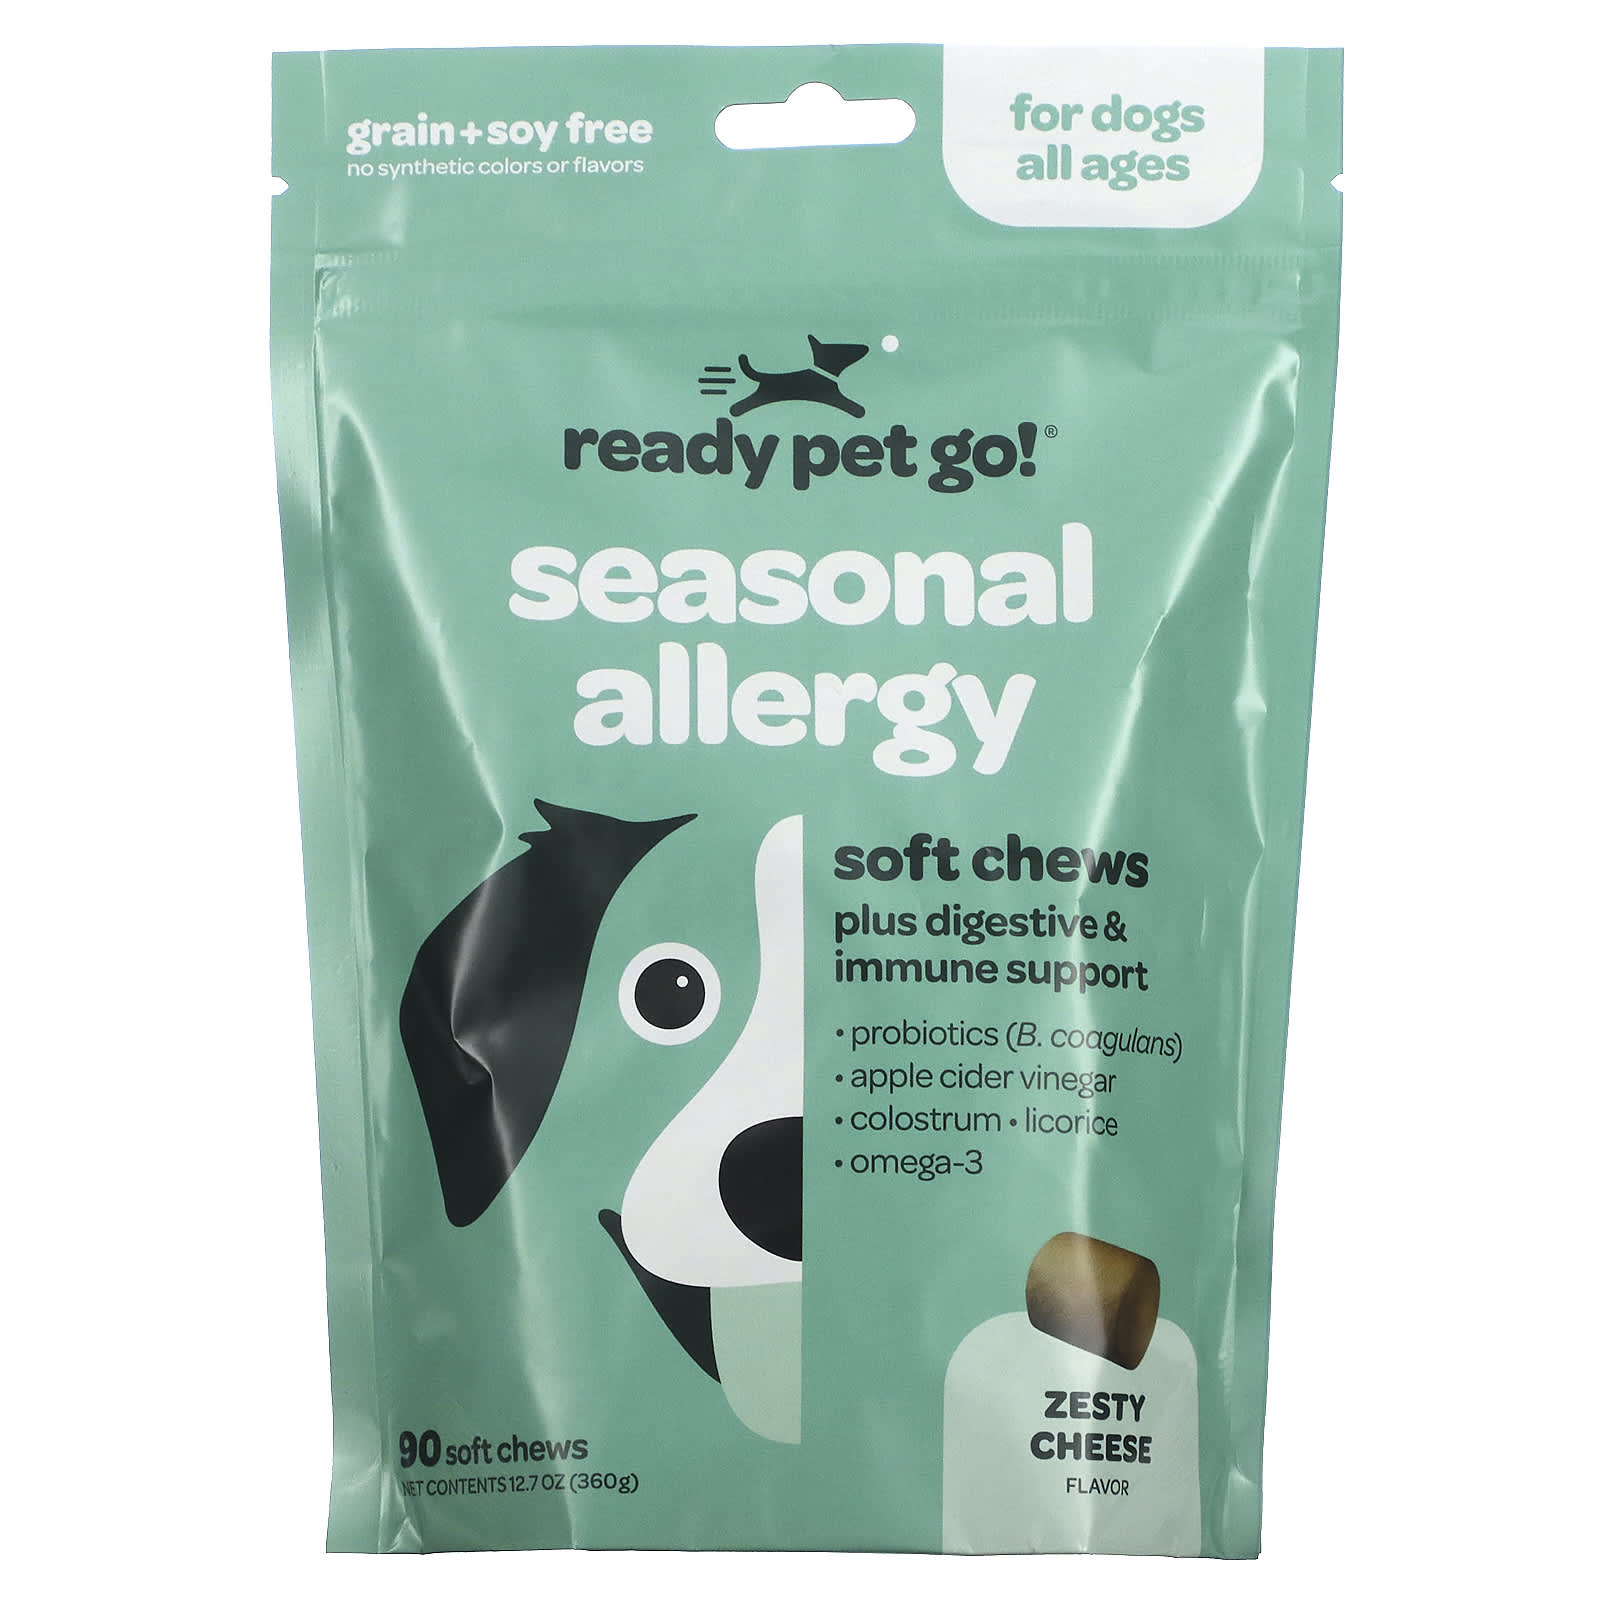 мука гарнец нутовая 0 5кг Жевательные Таблетки для Собак Ready Pet Go для борьбы с аллергией и иммунитетом, с сыром, 90 жевательных таблеток